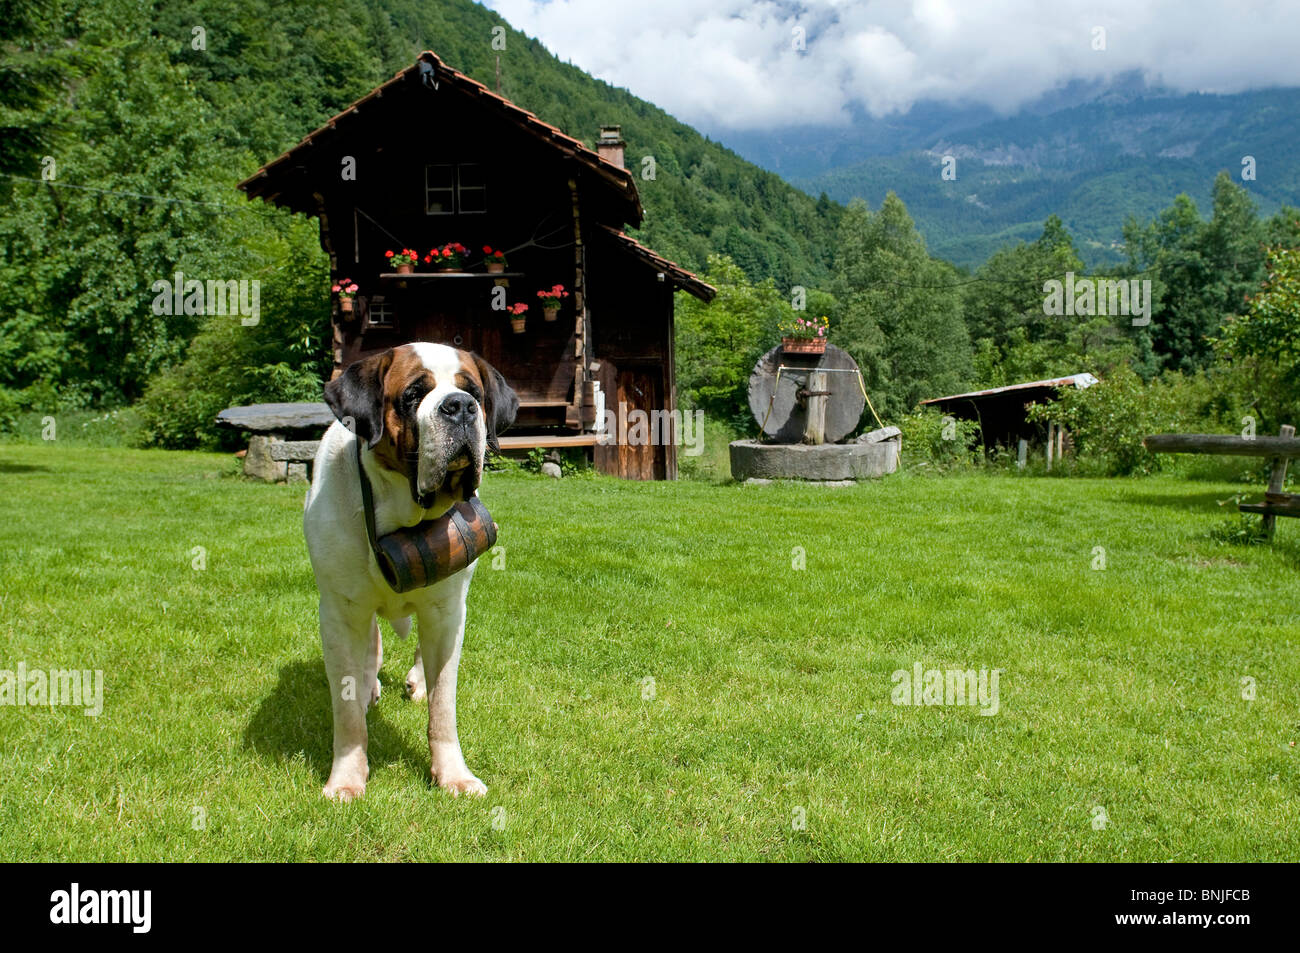 Bernhardiner Hund Schweizer Rasse draußen im Freien im freien Haustier  Erwachsenen Lauf der Schweiz Alpen Berg Berge Cabine Alphütte  Stockfotografie - Alamy